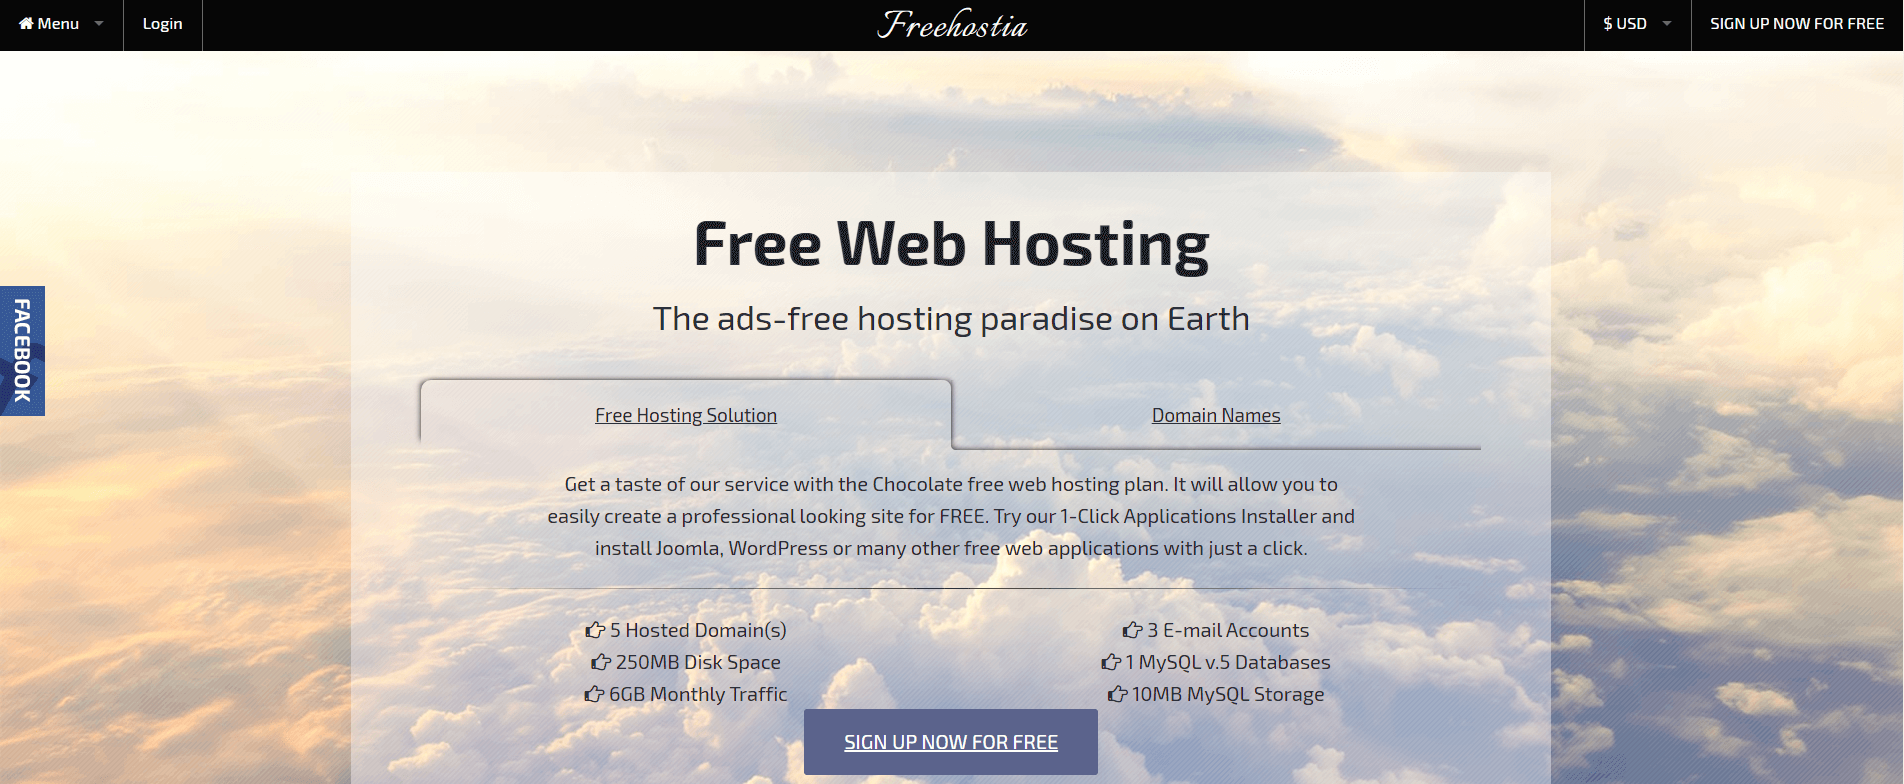 Hébergement Web gratuit de Freehostia